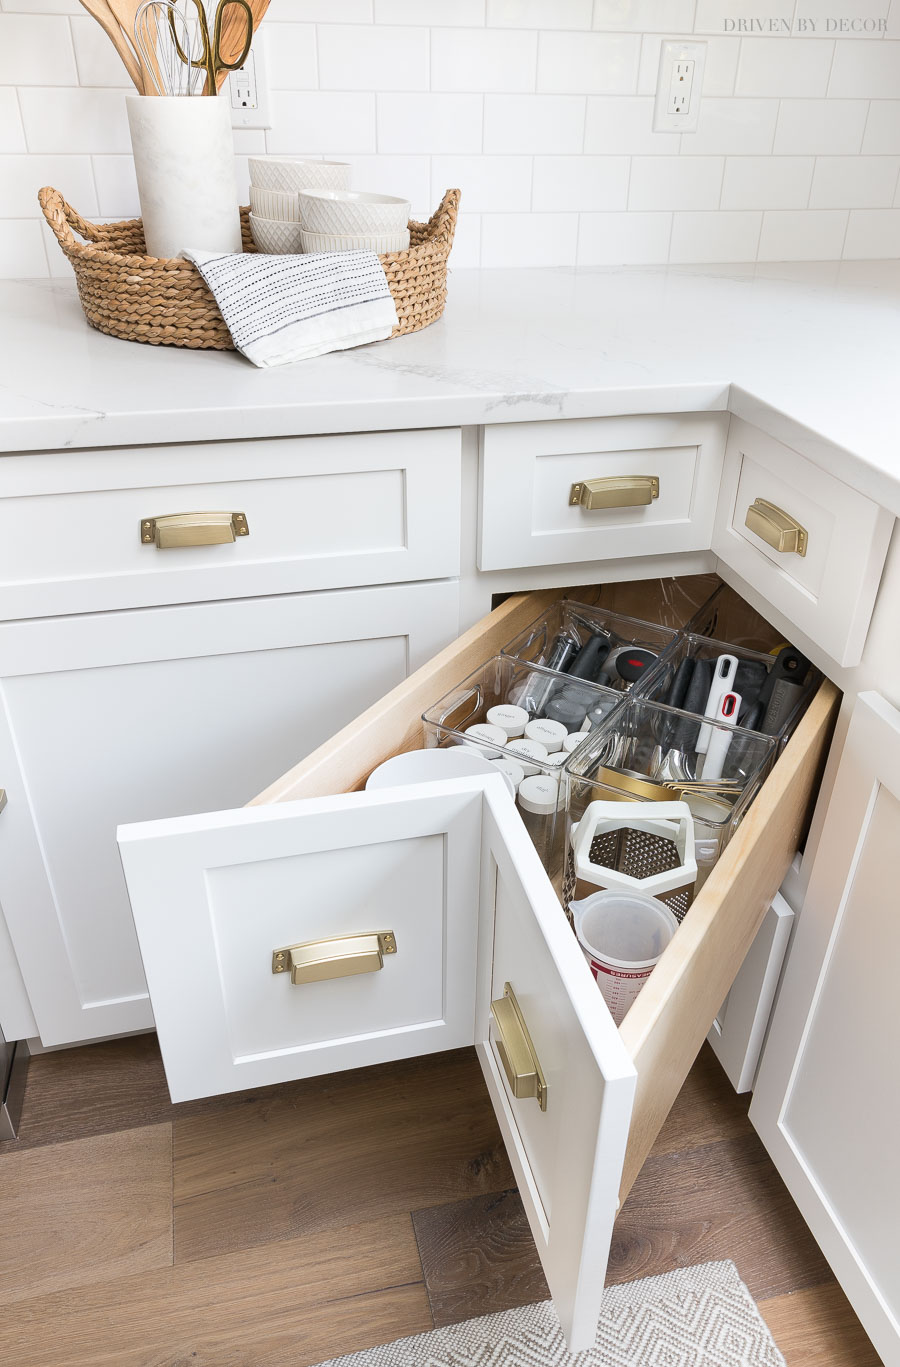 Kitchen Cabinet Storage & Organization Ideas! | Driven by ...